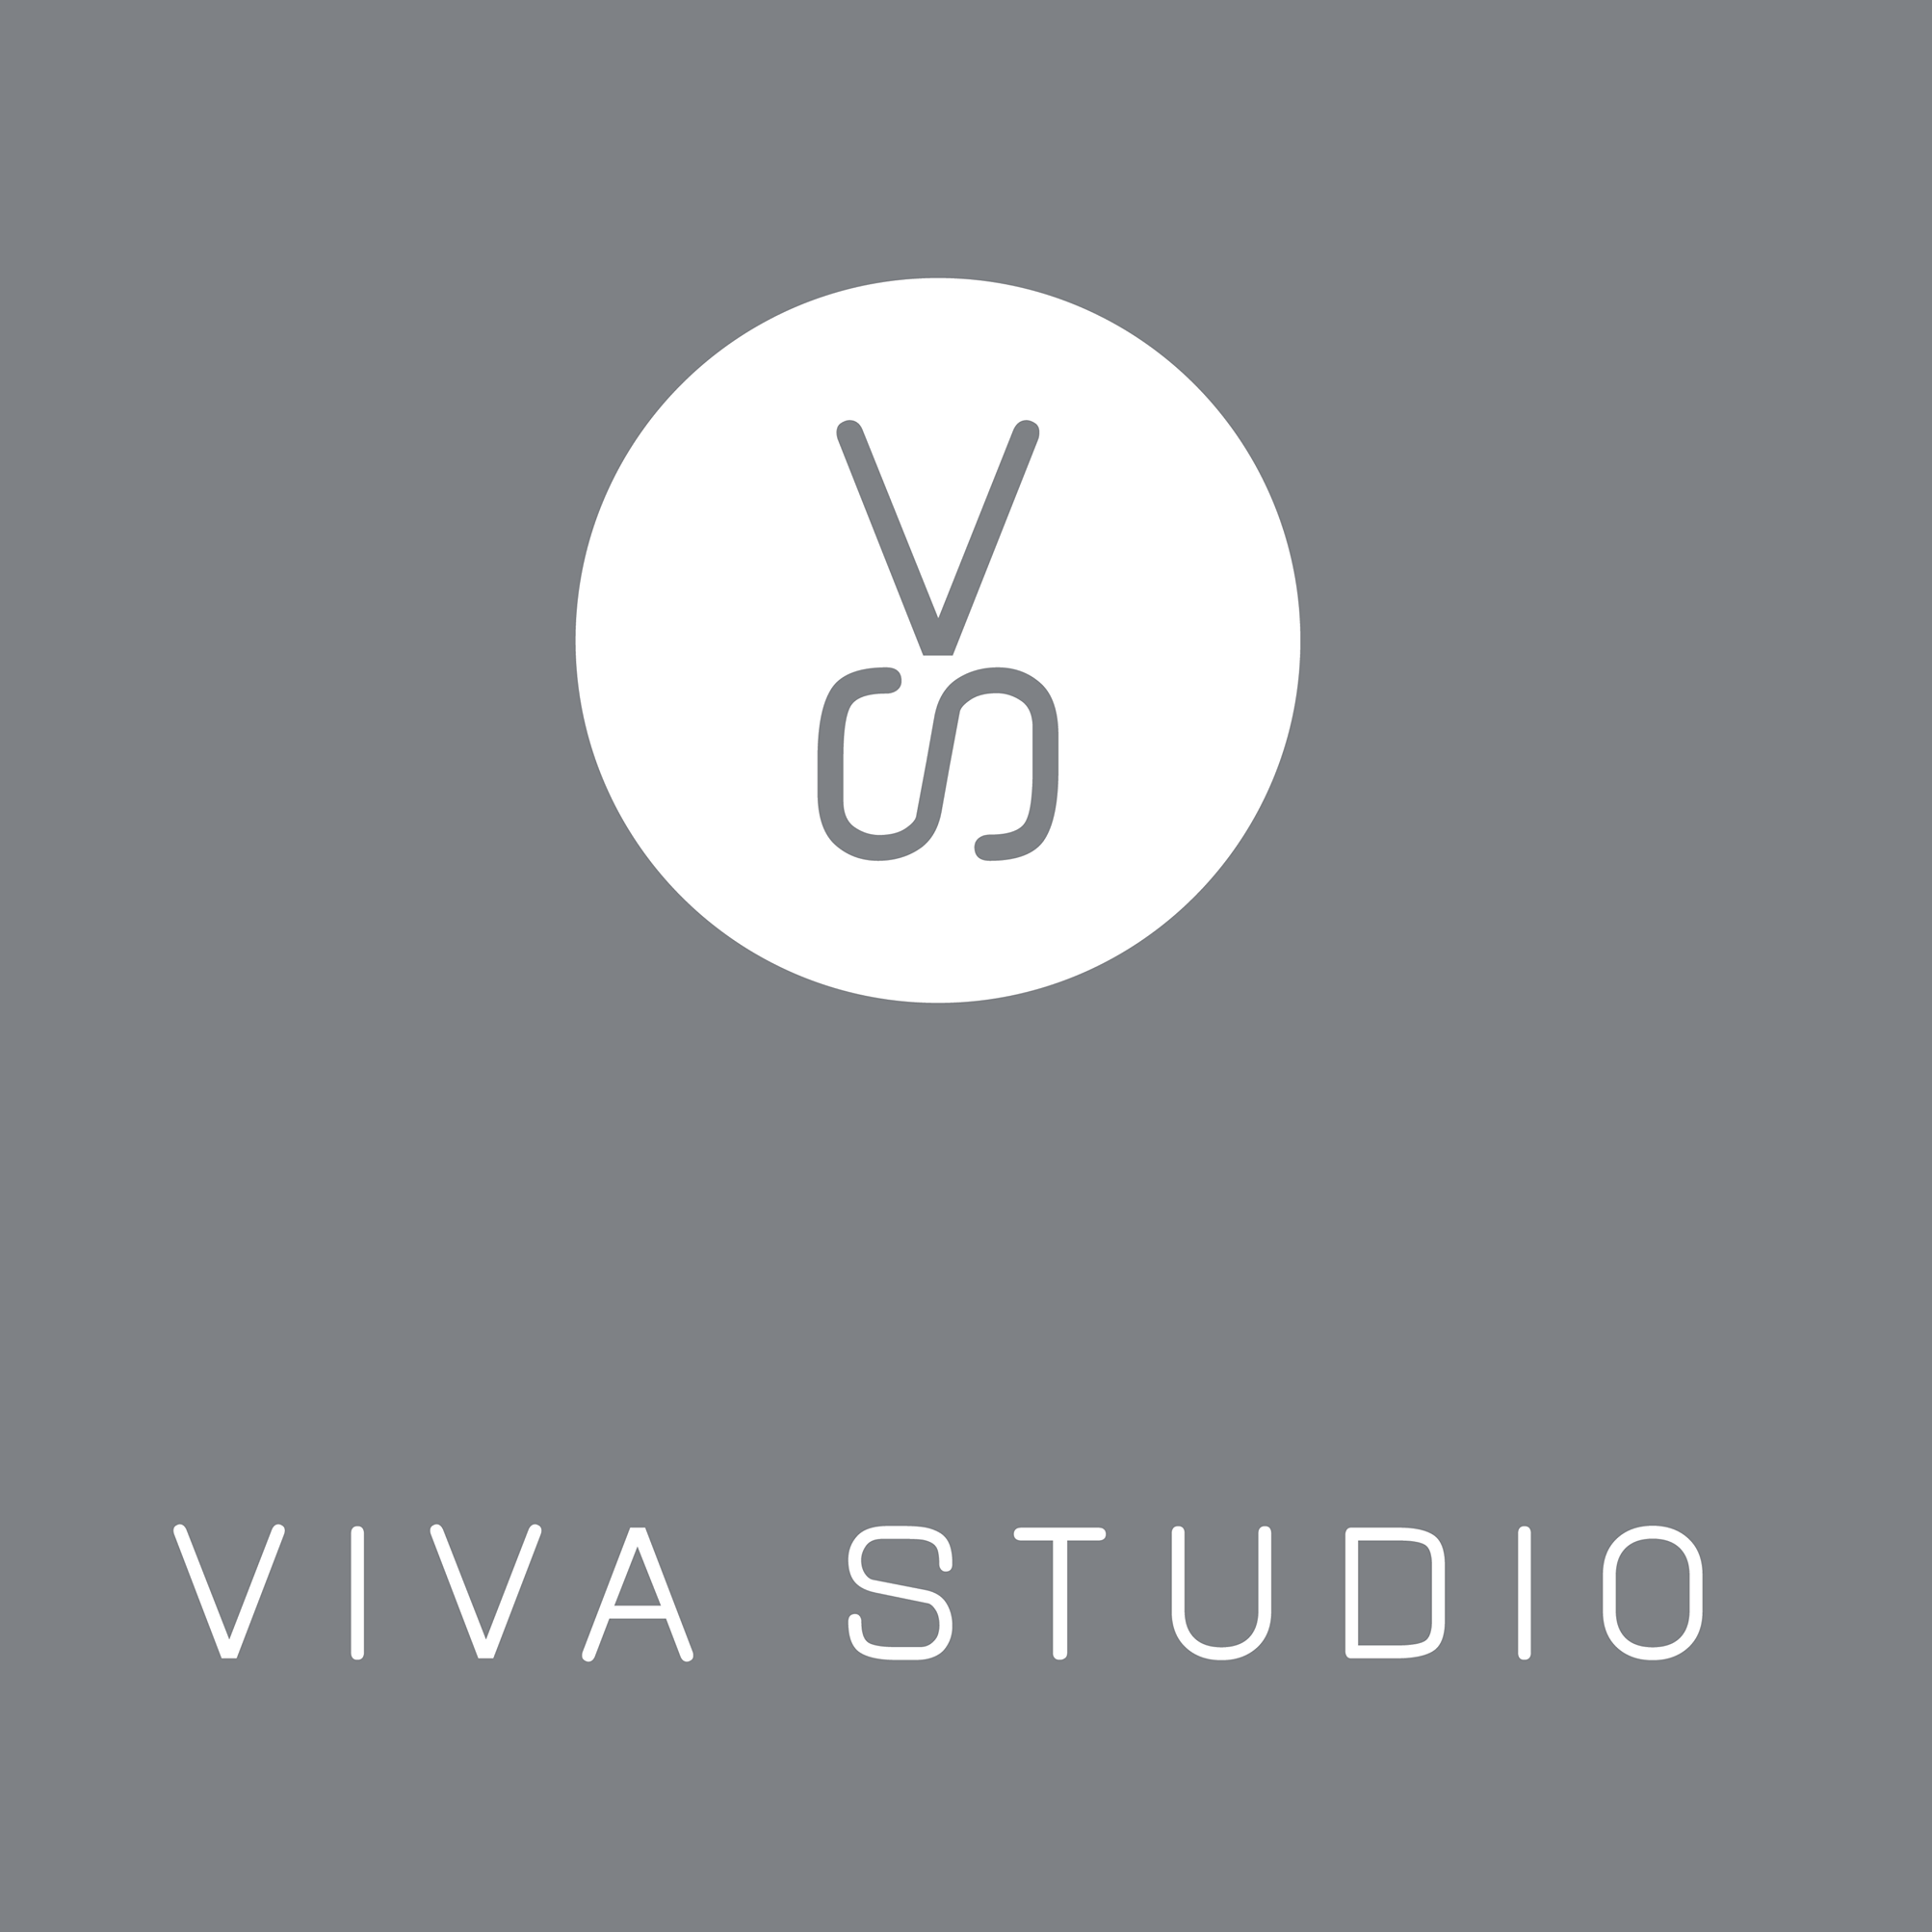 Viva Studio